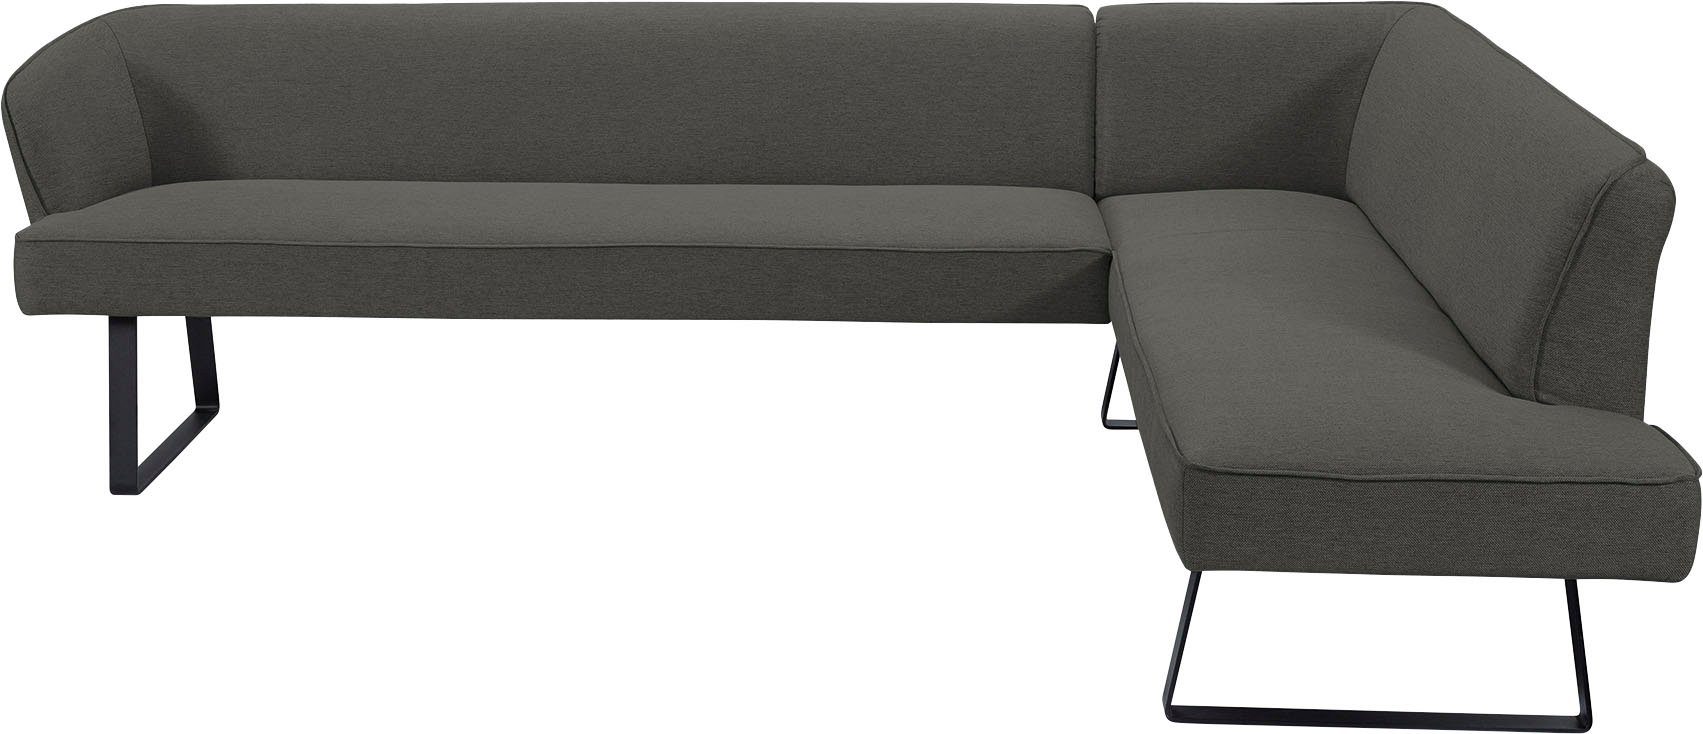 Americano, Eckbank sofa - fashion verschiedenen in Keder mit Bezug Qualitäten exxpo Metallfüßen, und